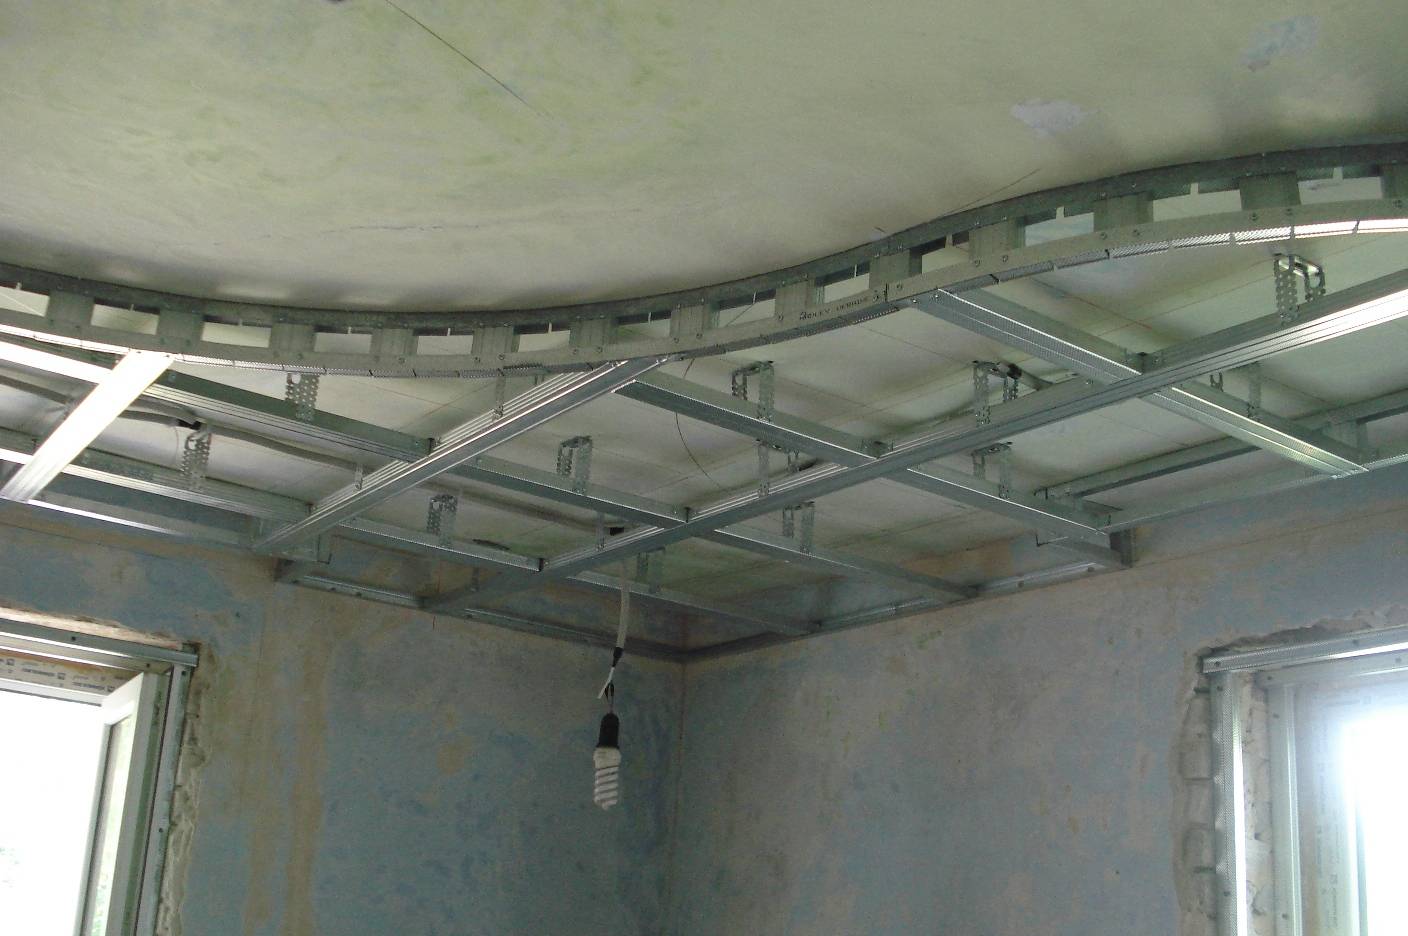 Многоуровневые потолки из гипсокартона - фото вариантов дизайна, как они создаются